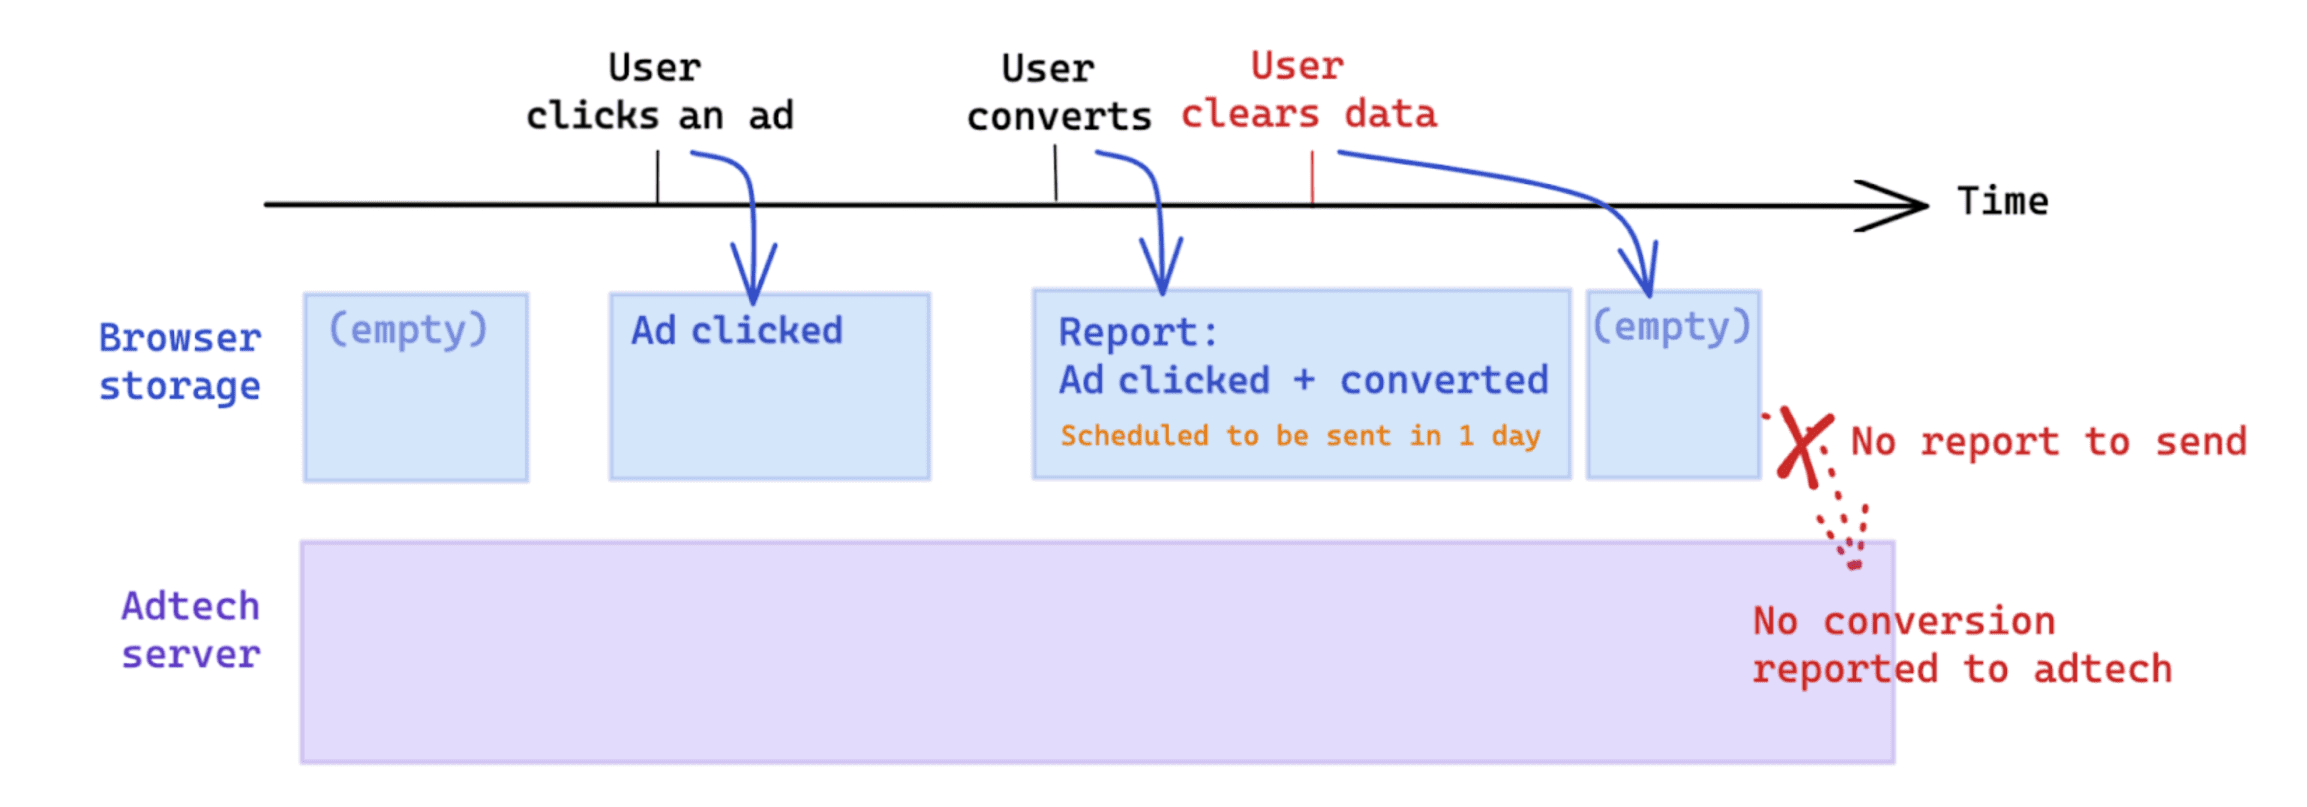 Das vom Nutzer initiierte Datenlöschung nach einer Conversion wirkt sich auf die Messung gemäß der Attribution Reporting API aus.